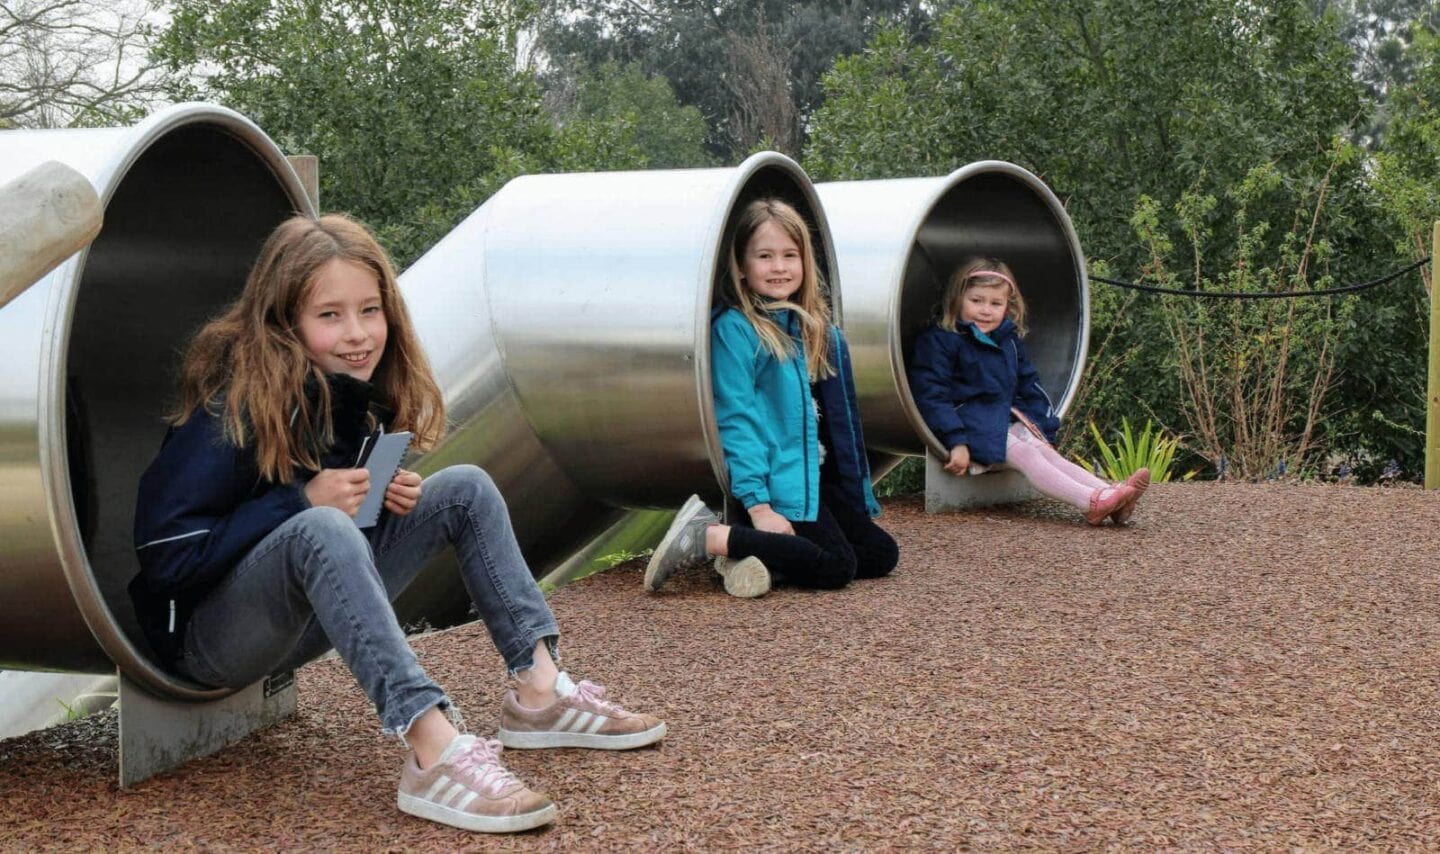 The Children’s Garden at Kew Gardens